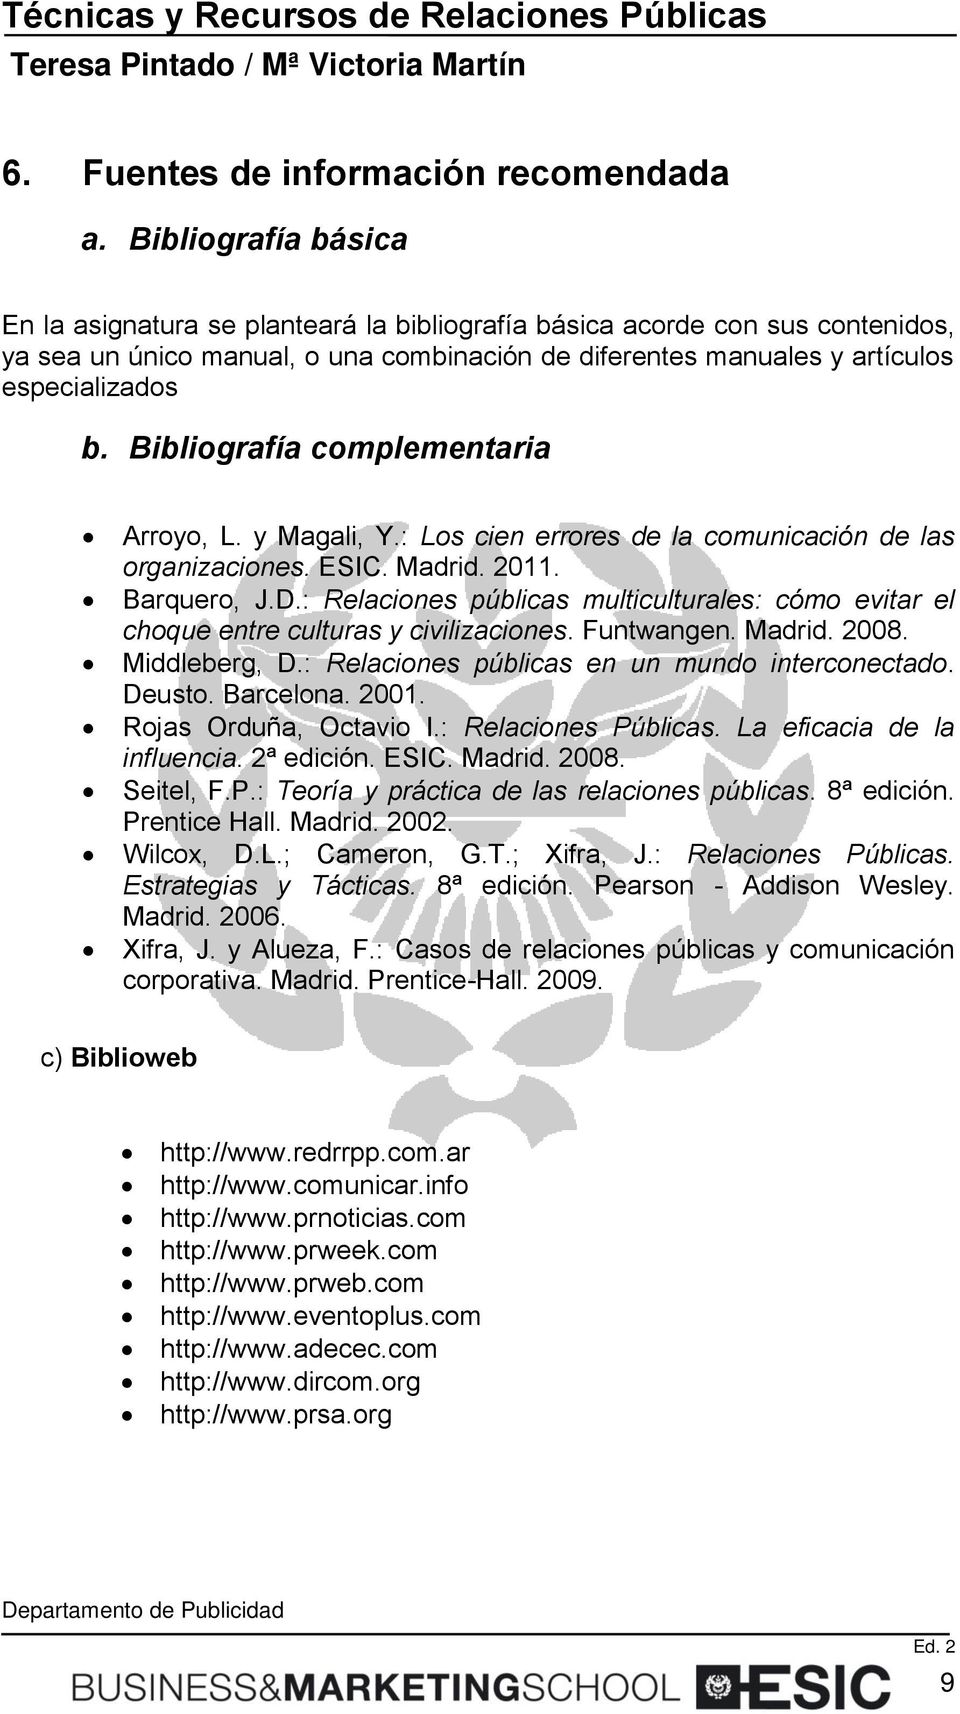 Bibliografía complementaria Arroyo, L. y Magali, Y.: Los cien errores de la comunicación de las organizaciones. ESIC. Madrid. 2011. Barquero, J.D.